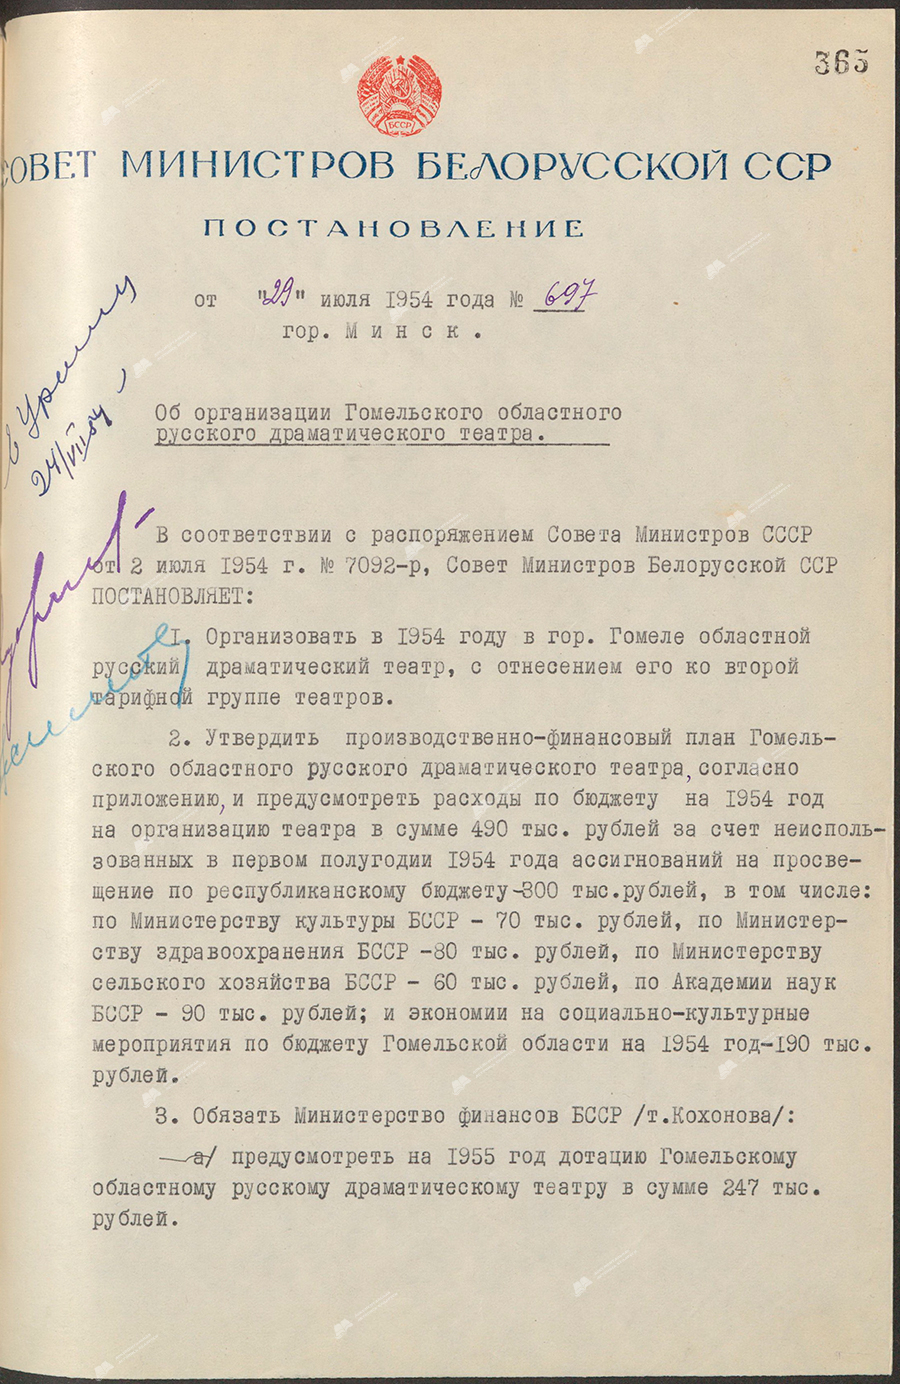 Beschluss Nr. 697 des Ministerrats der Weißrussischen SSR «Über die Organisation des regionalen russischen Dramatheaters Gomel»-стр. 0